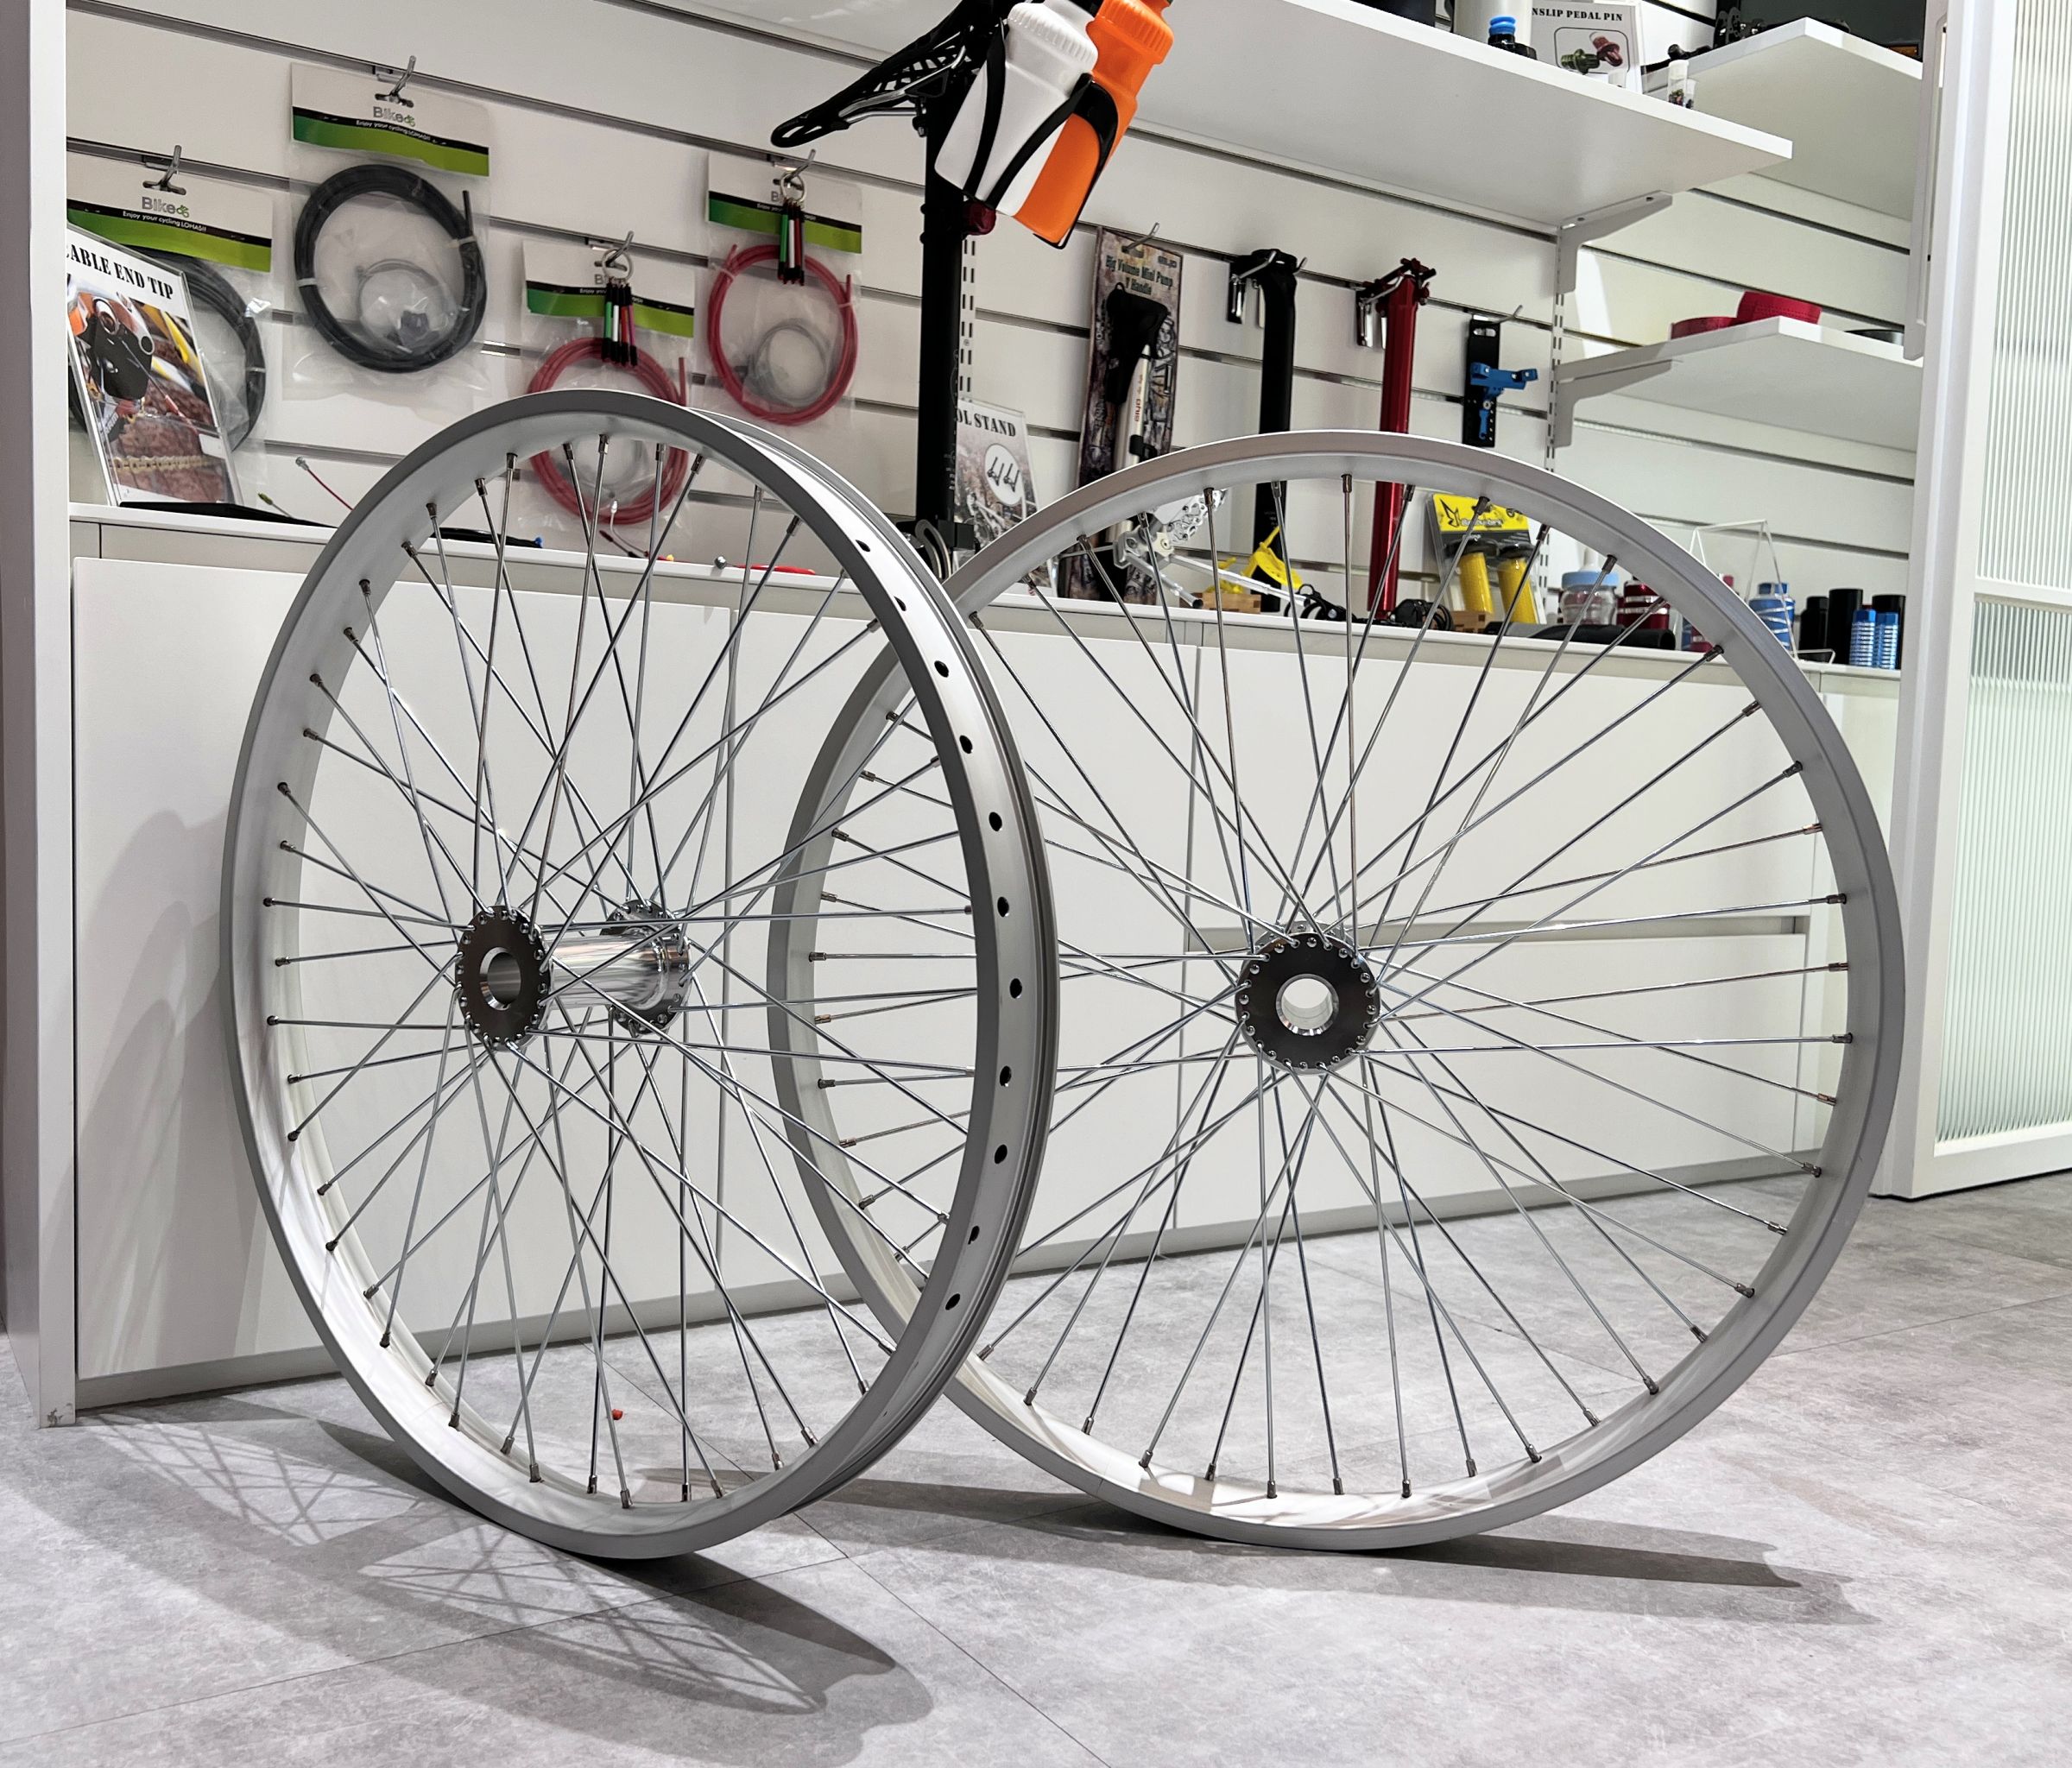 Servicio de fabricación y ensamblaje de juegos de ruedas para bicicletas